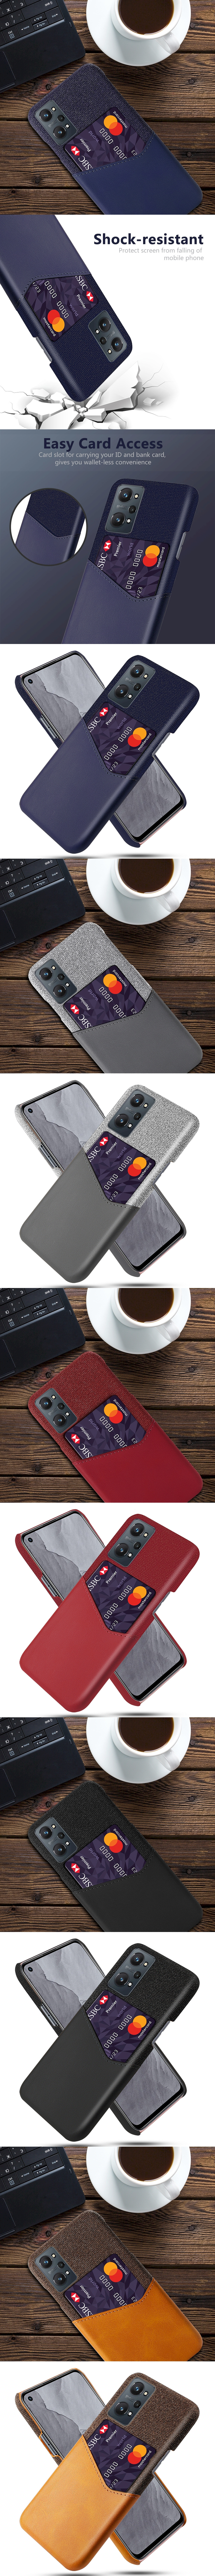 皮革保護殼(PLAIN) - 皮革混布紋單插卡背蓋撞色手機殼保護套手機套